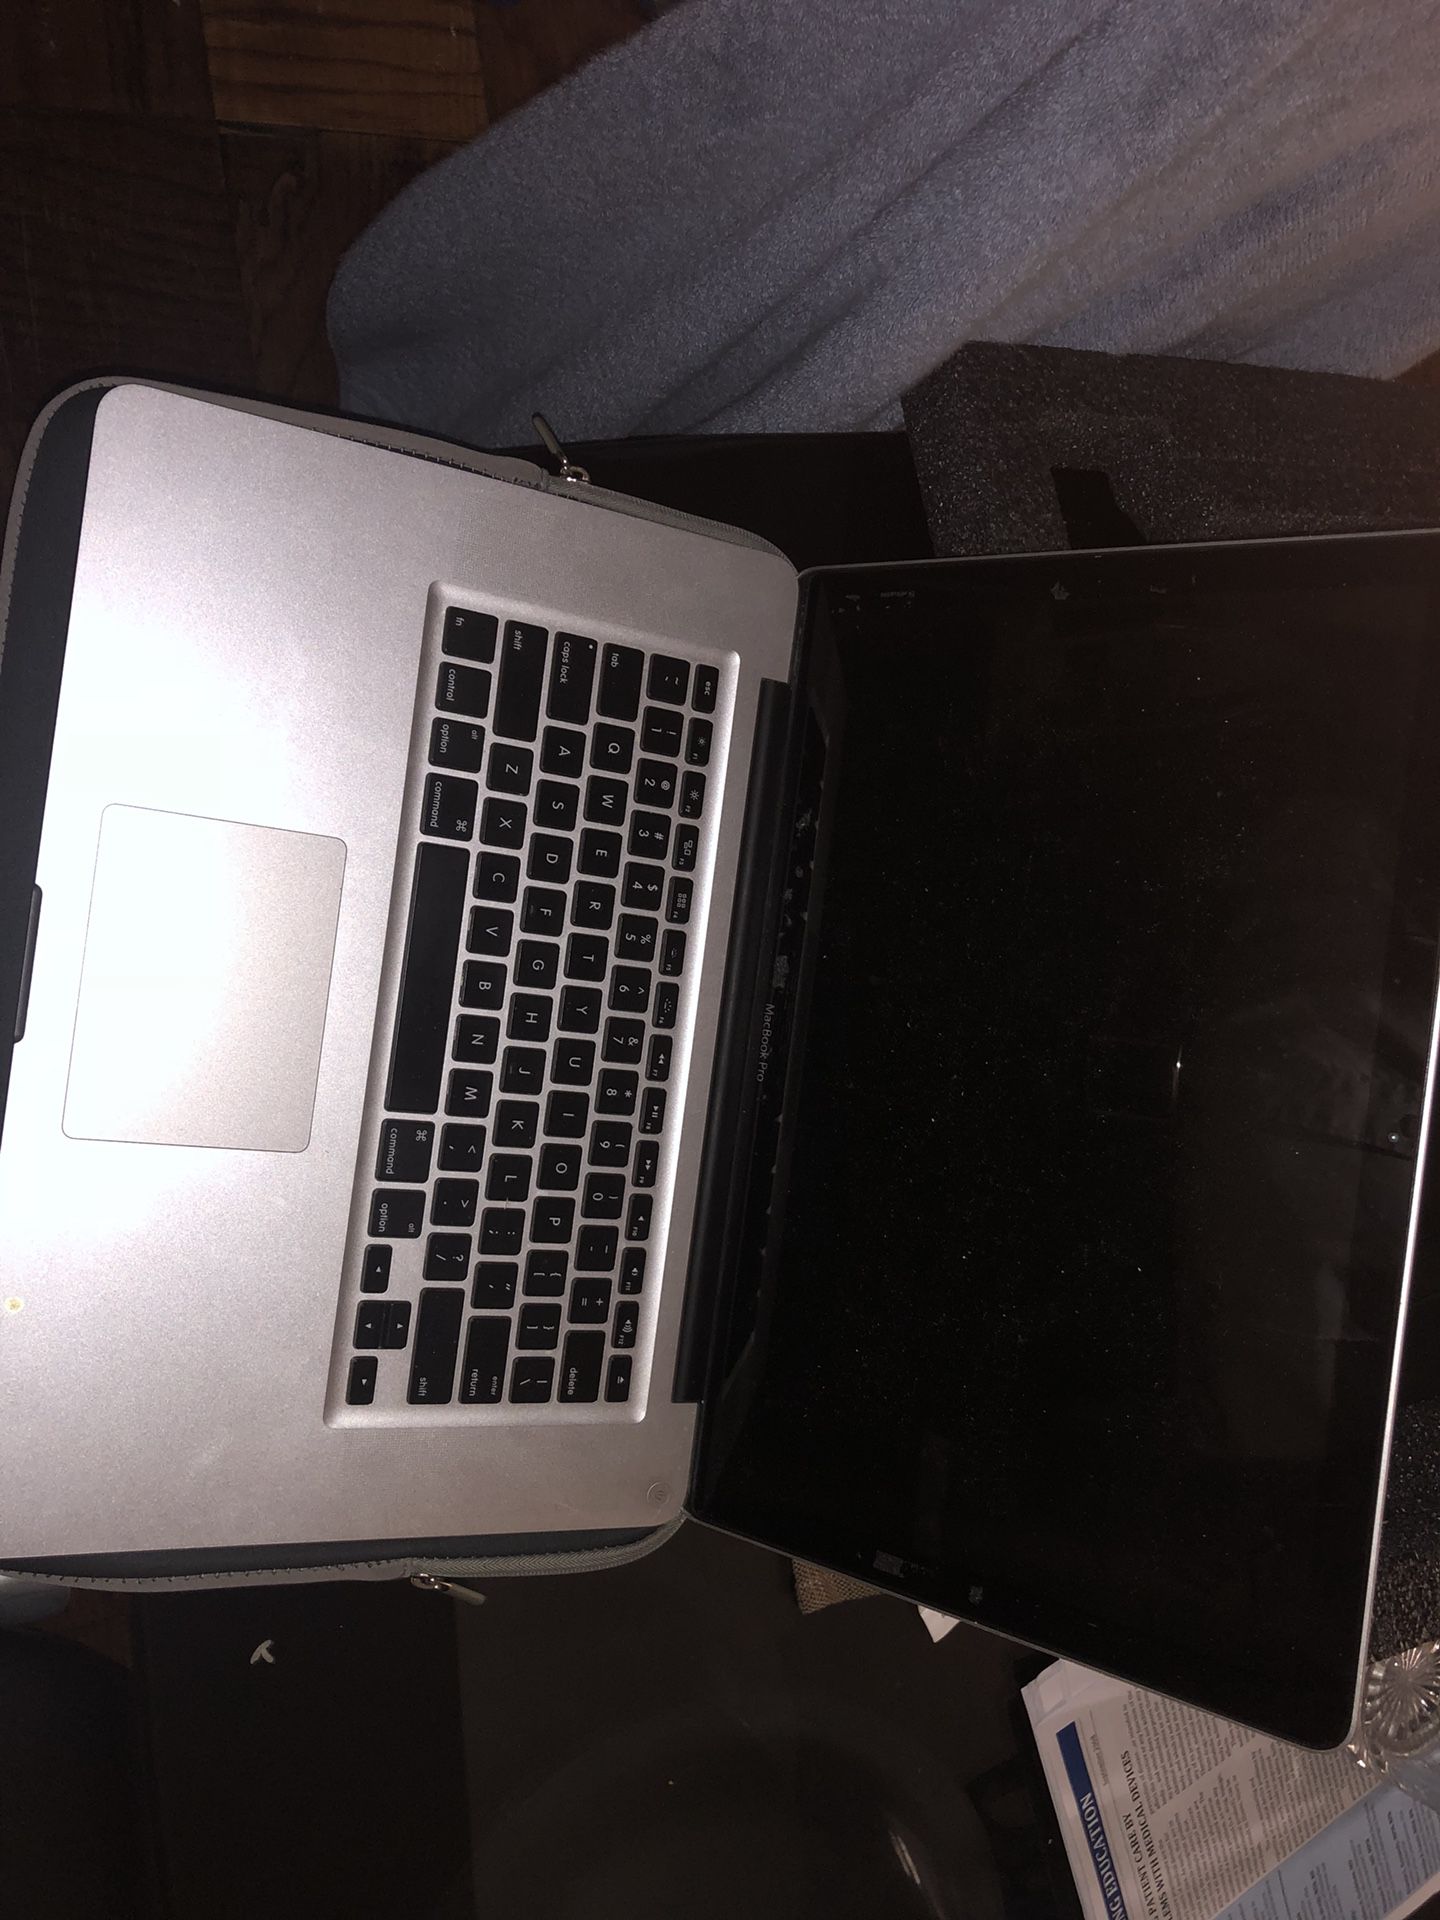 MacBook Pro 15” 2012